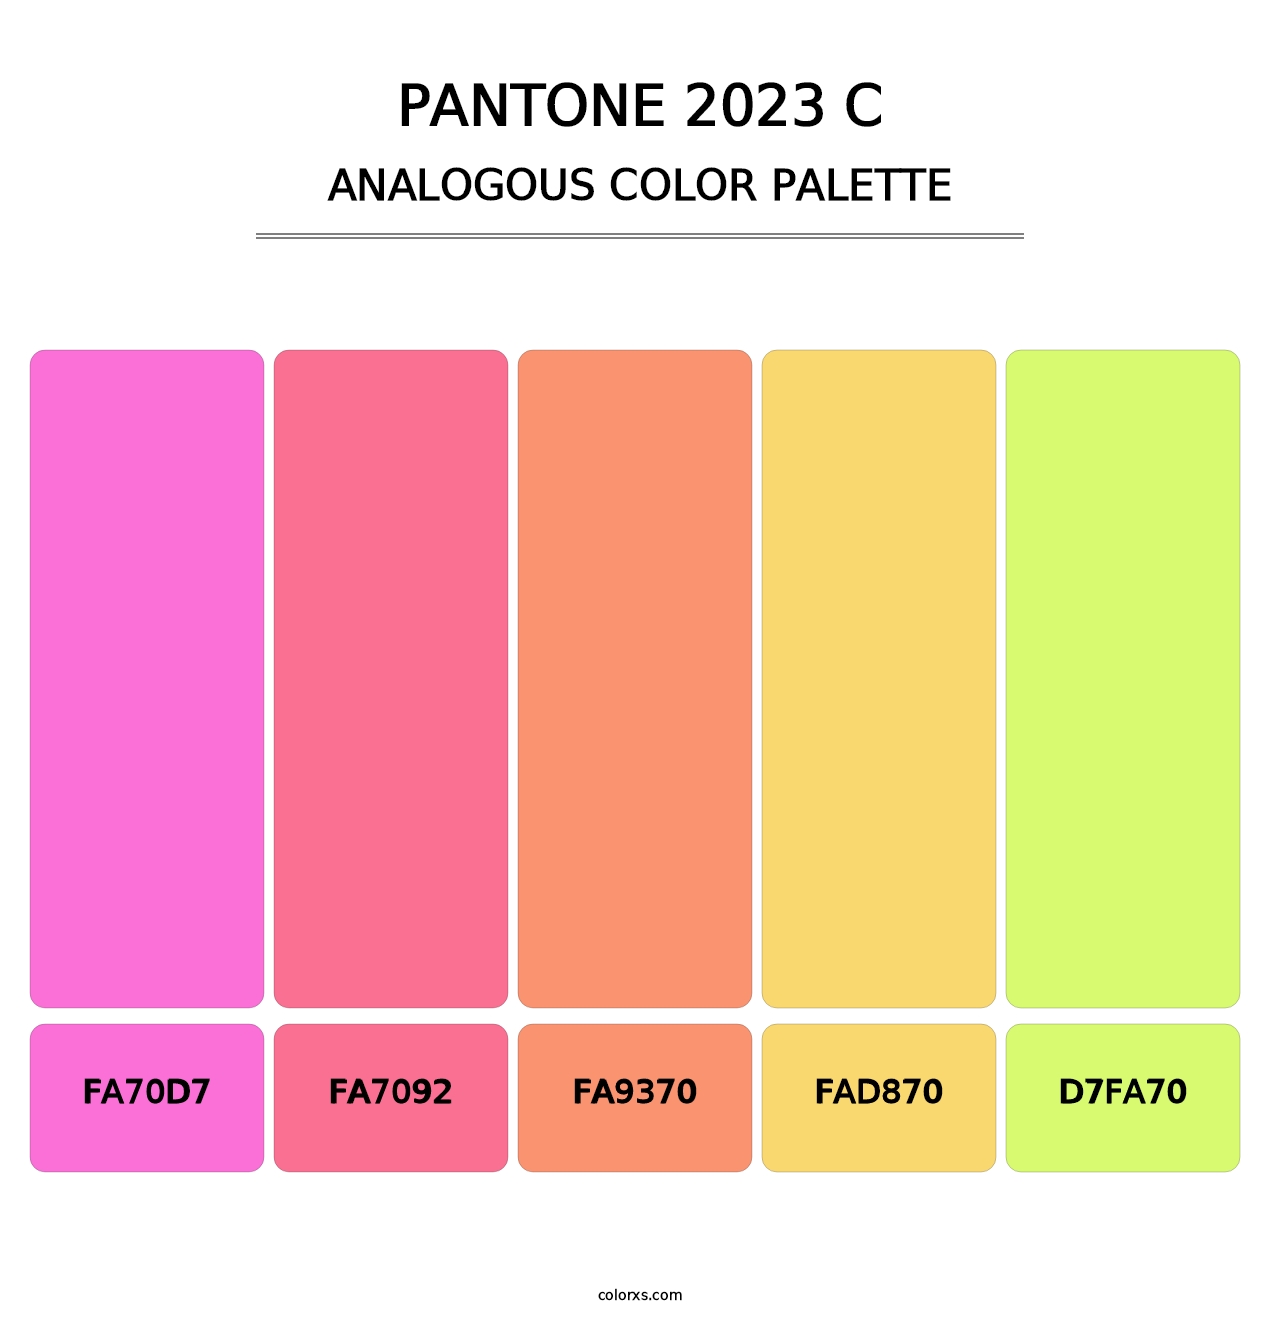 PANTONE 2023 C - Analogous Color Palette